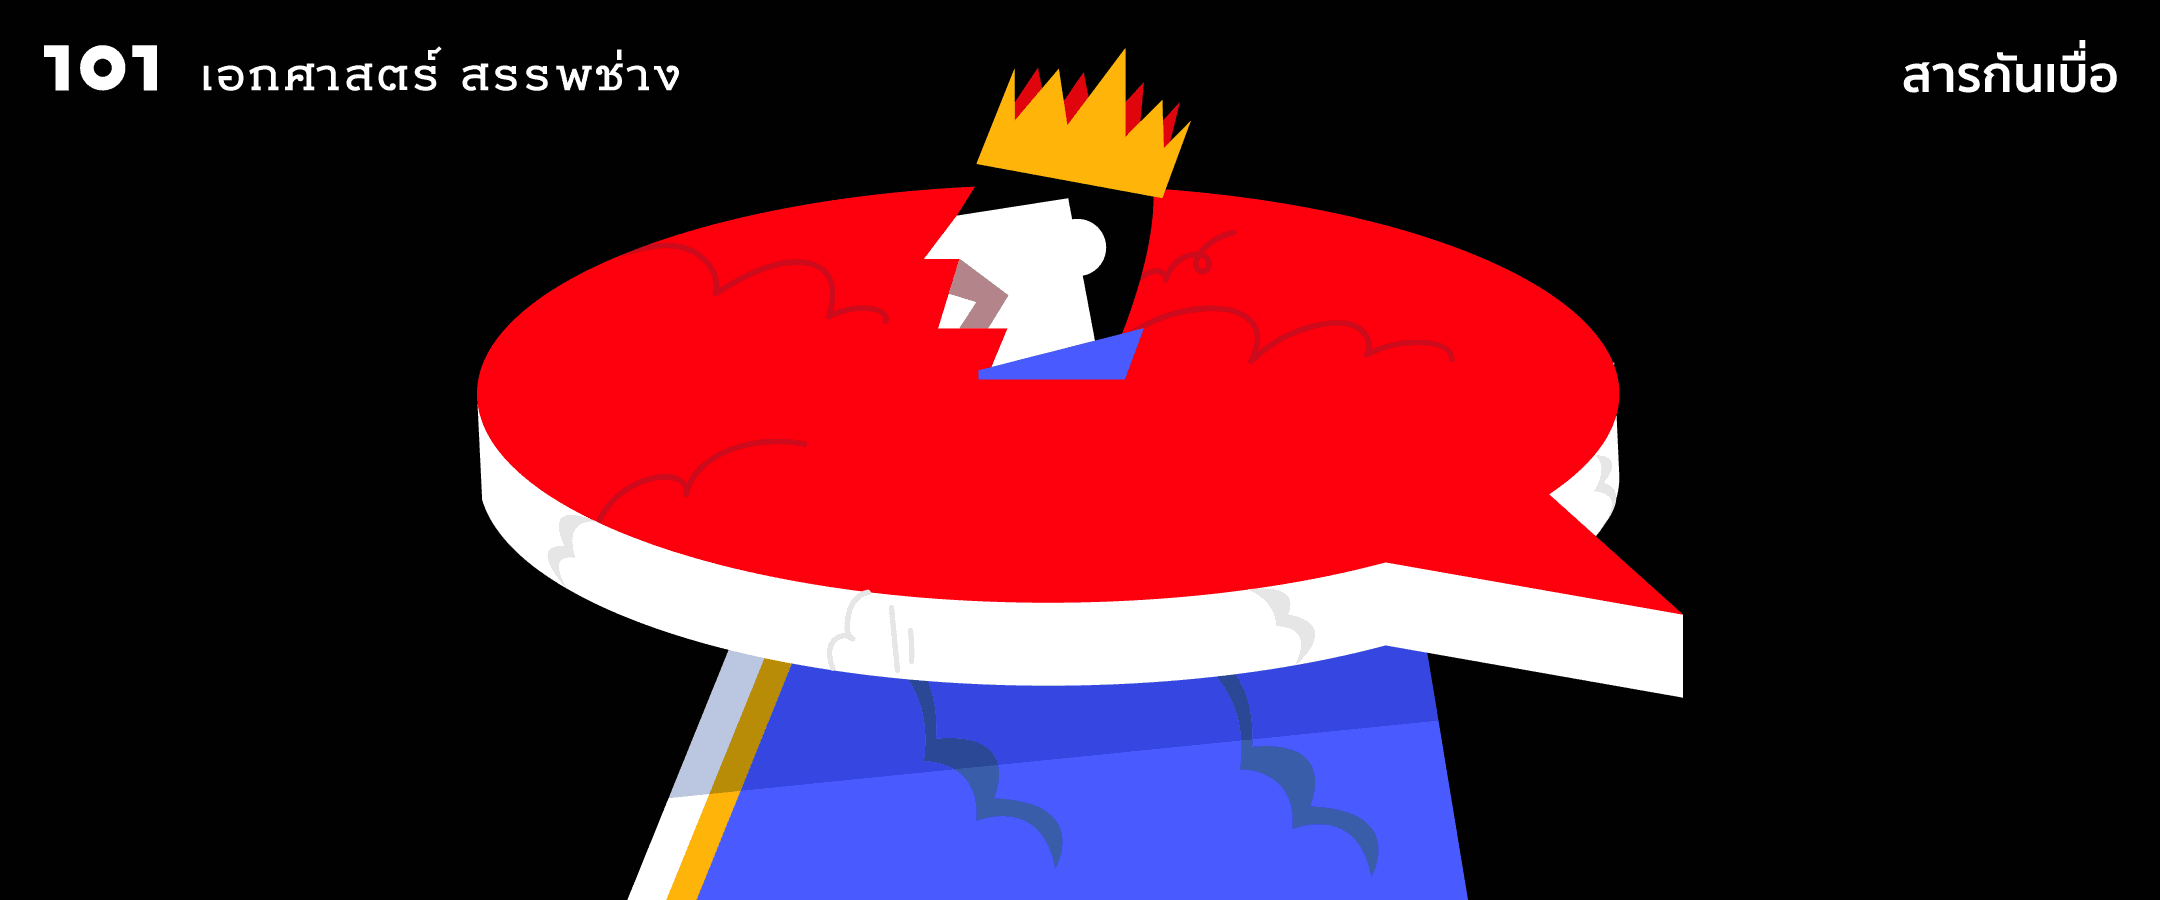 กษัตริย์-คนนอก-การดูถูก: ราคาที่ราชาต้องจ่าย